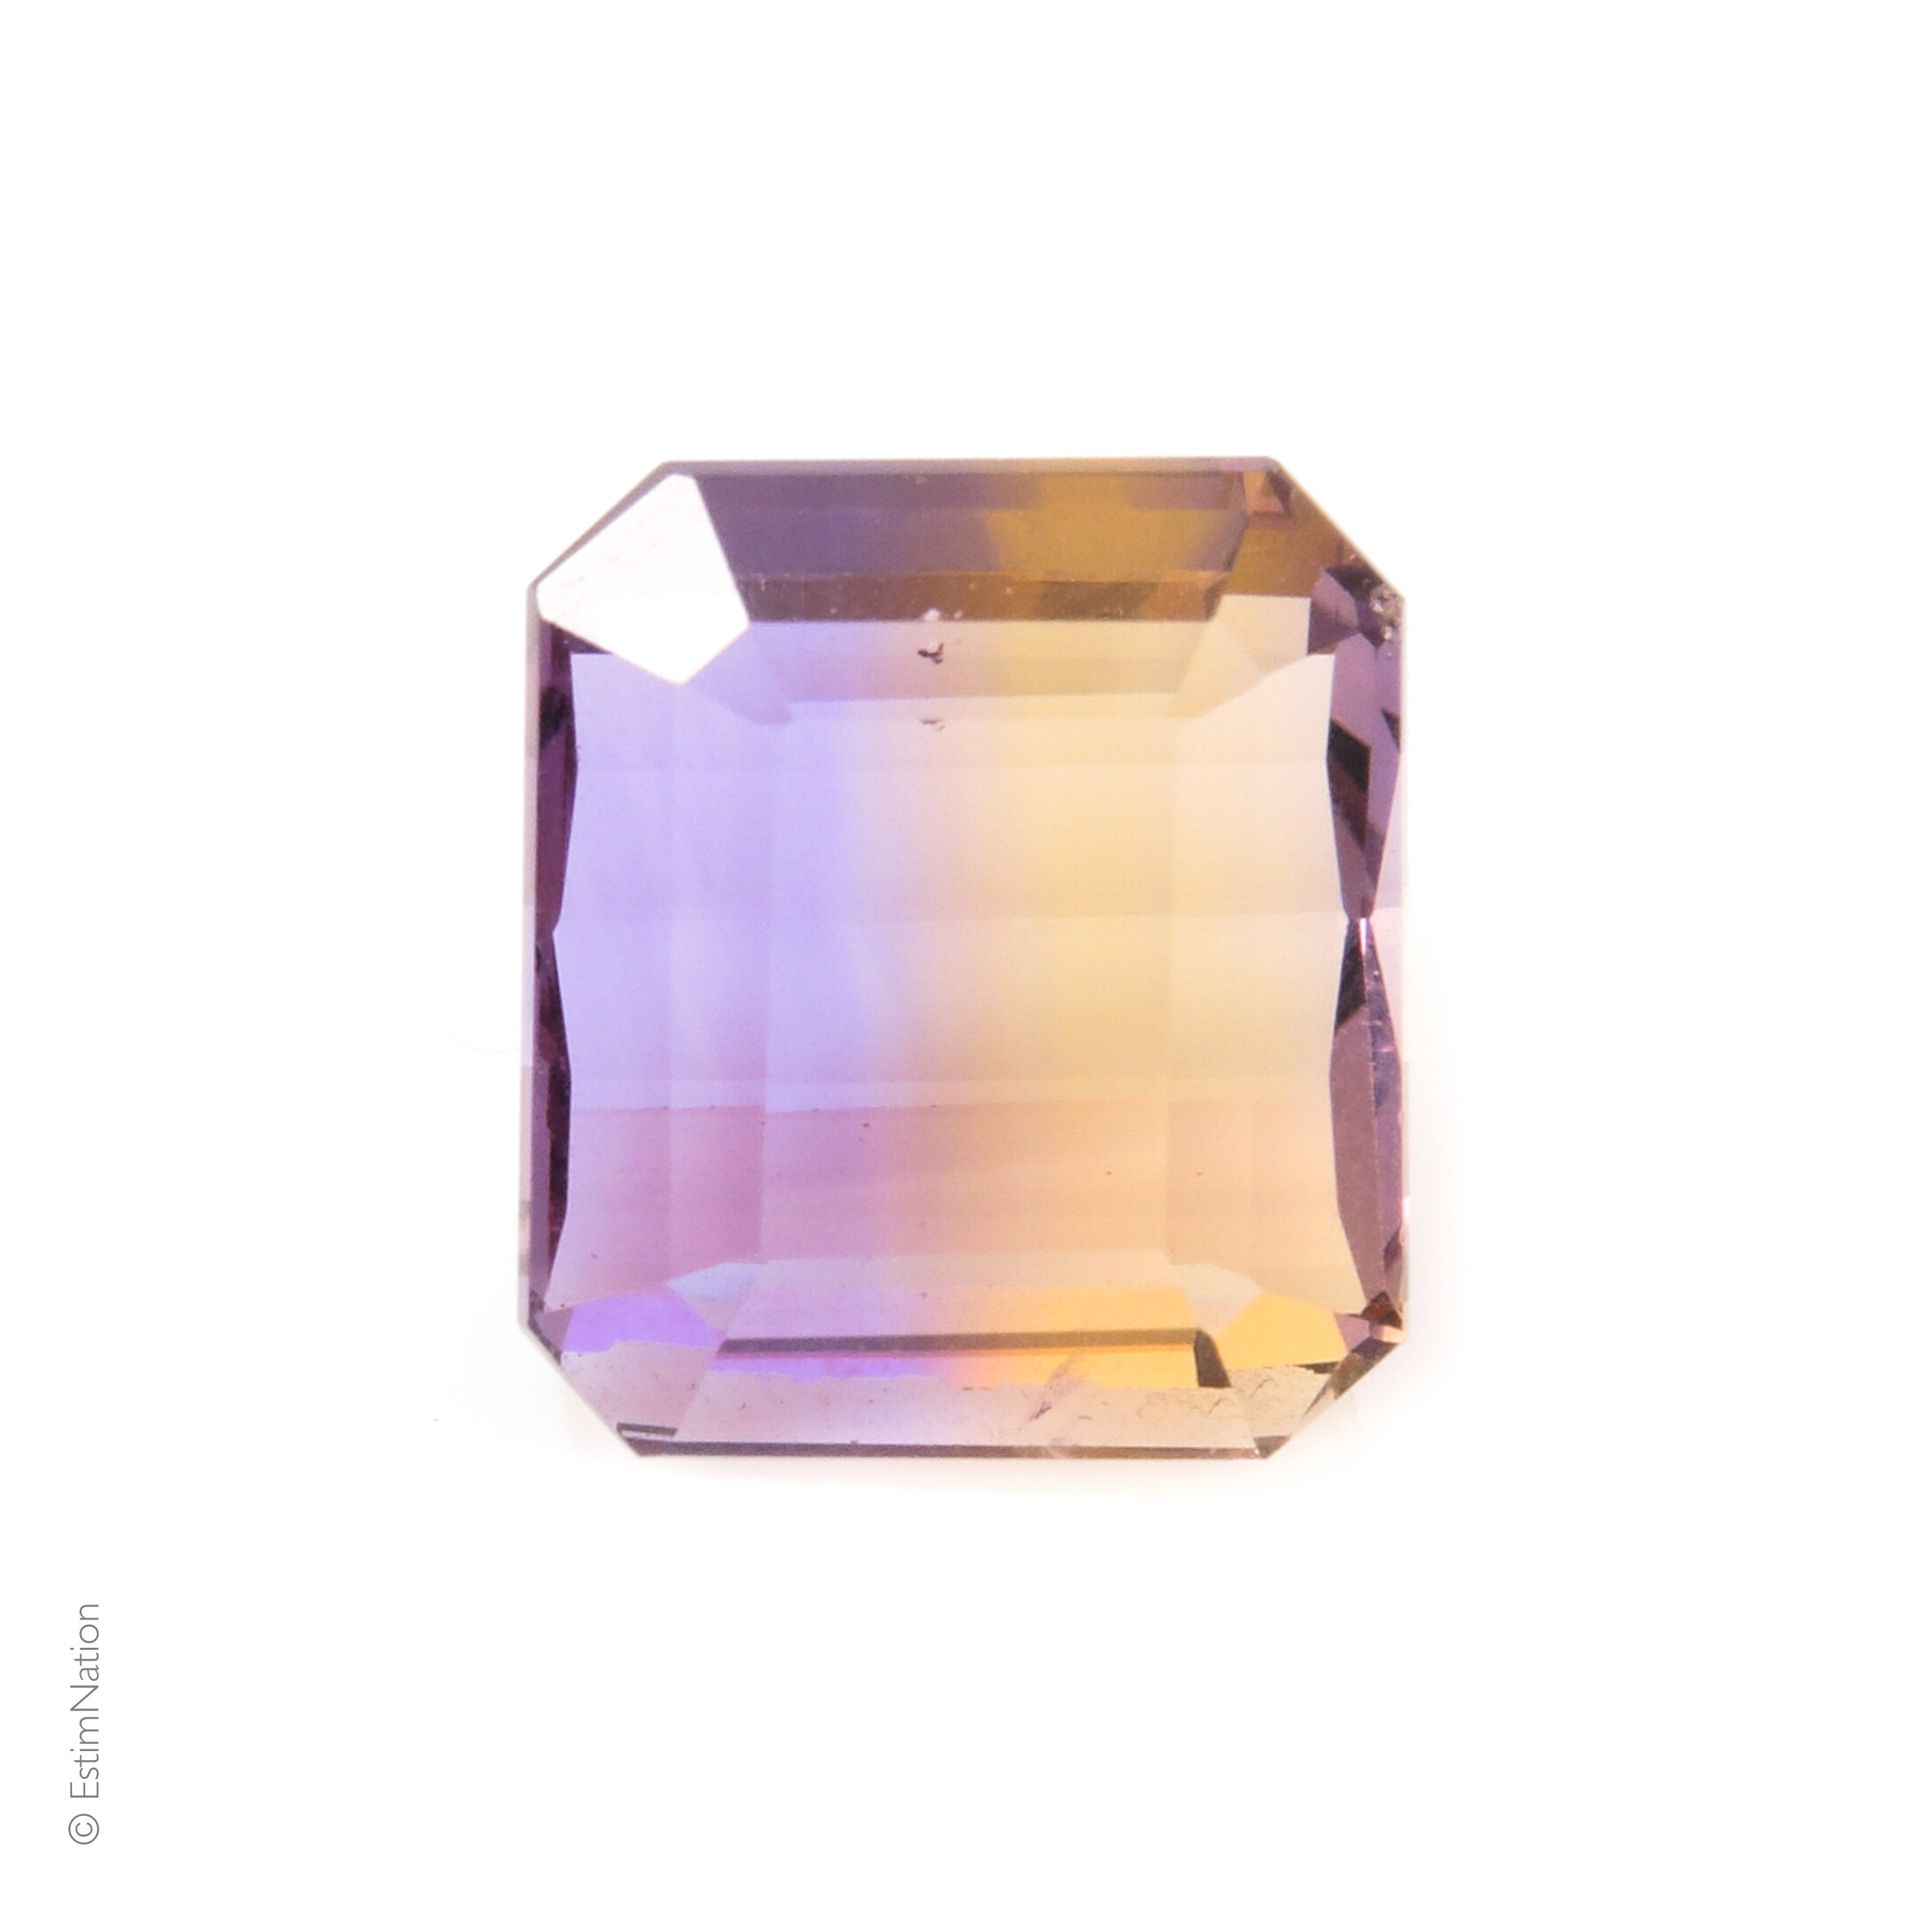 AMETRINE 14.69 CARAT 八角形切面的紫水晶，重约14.69克拉。

尺寸：15.00 x 13.15 x 8.90 mm

毛重 : 2,93&hellip;